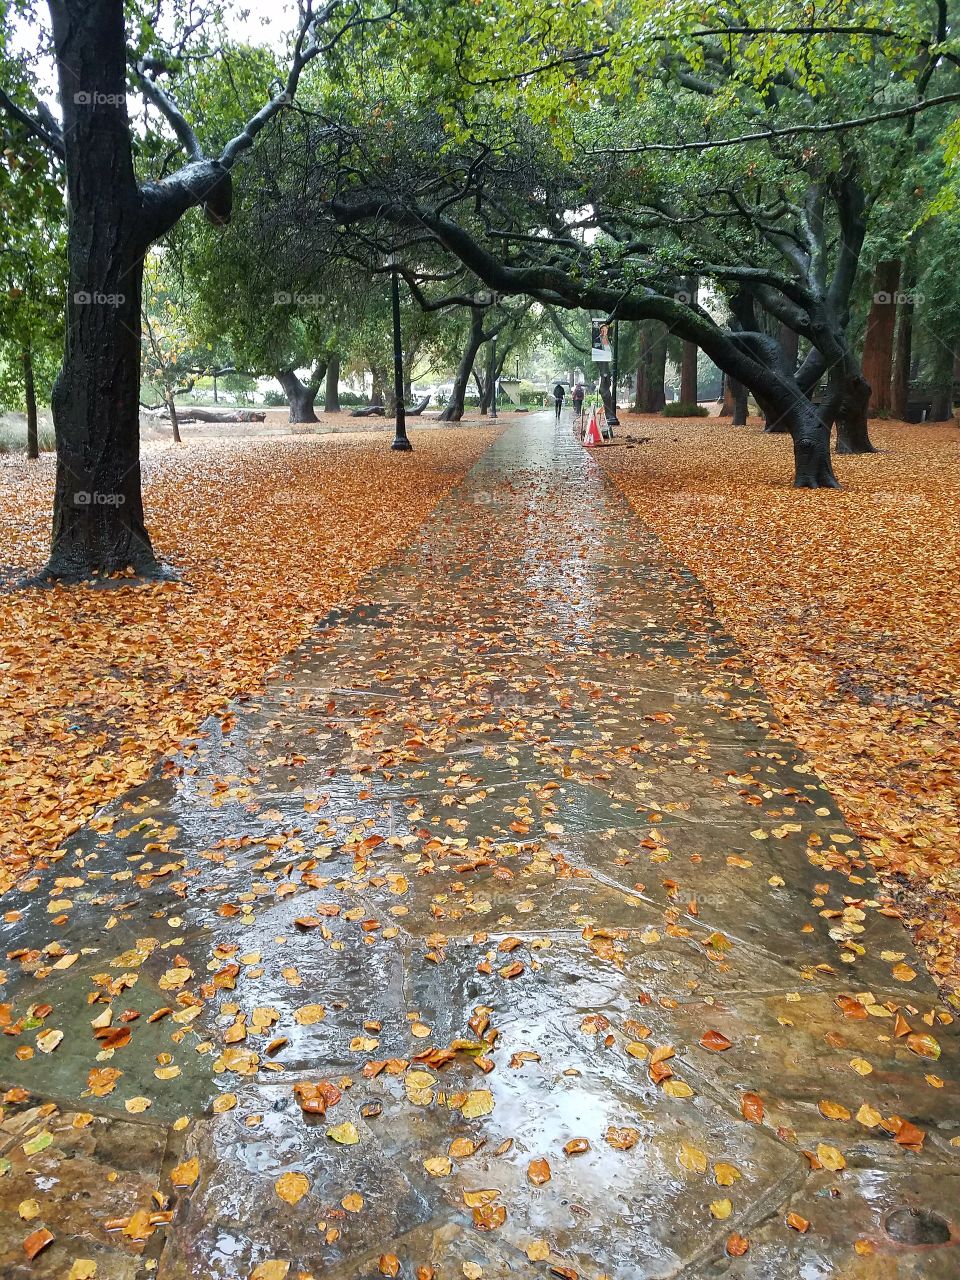 Fall in Berkeley, California